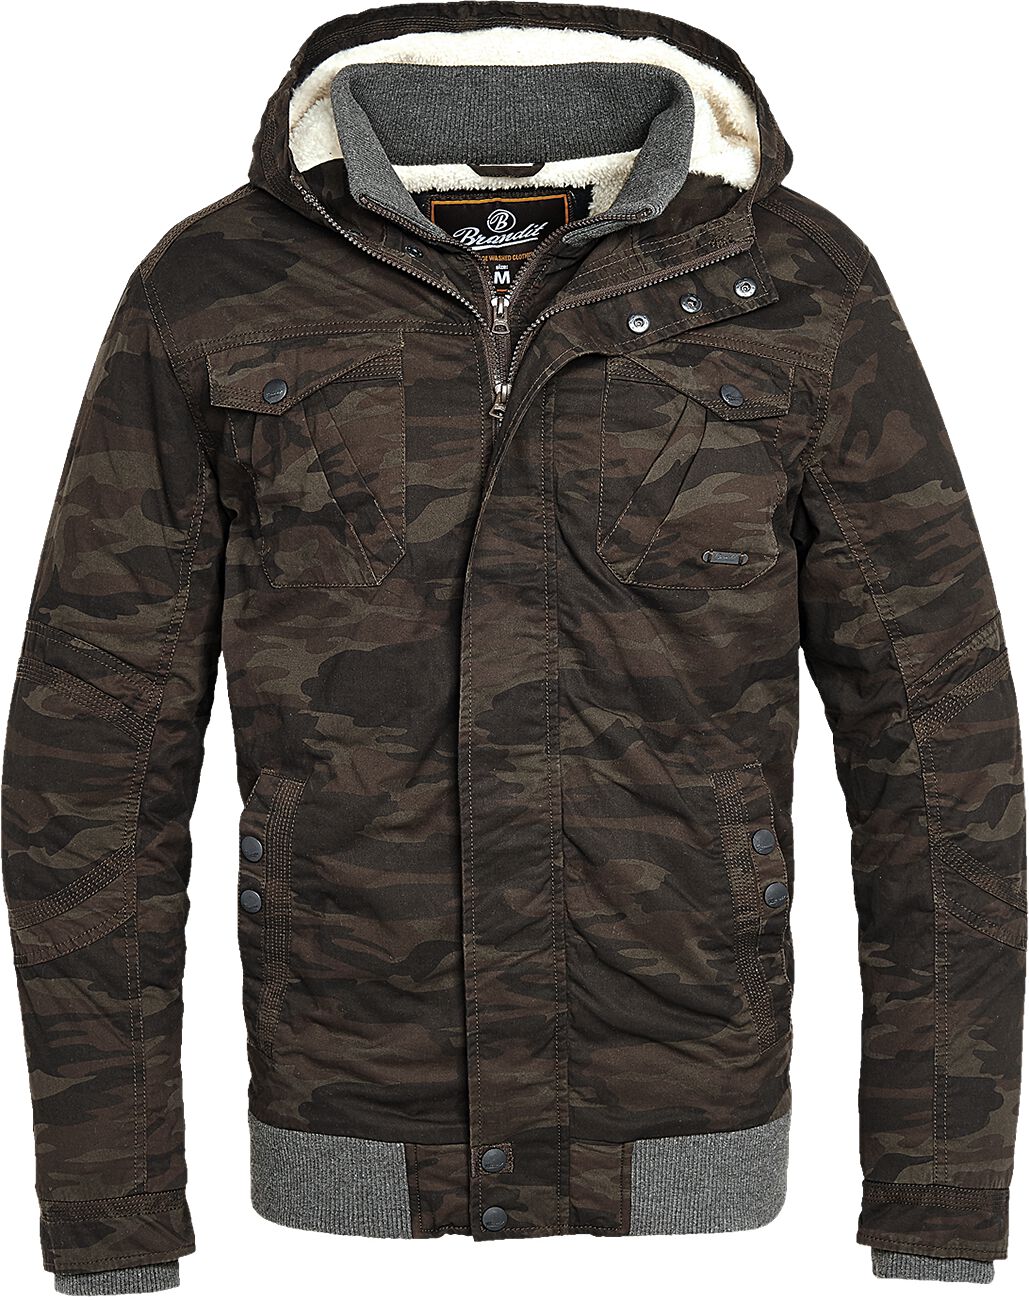 Brandit - Camouflage/Flecktarn Winterjacke - Parkmont Jacket - S bis 5XL - für Männer - Größe 3XL - camouflage